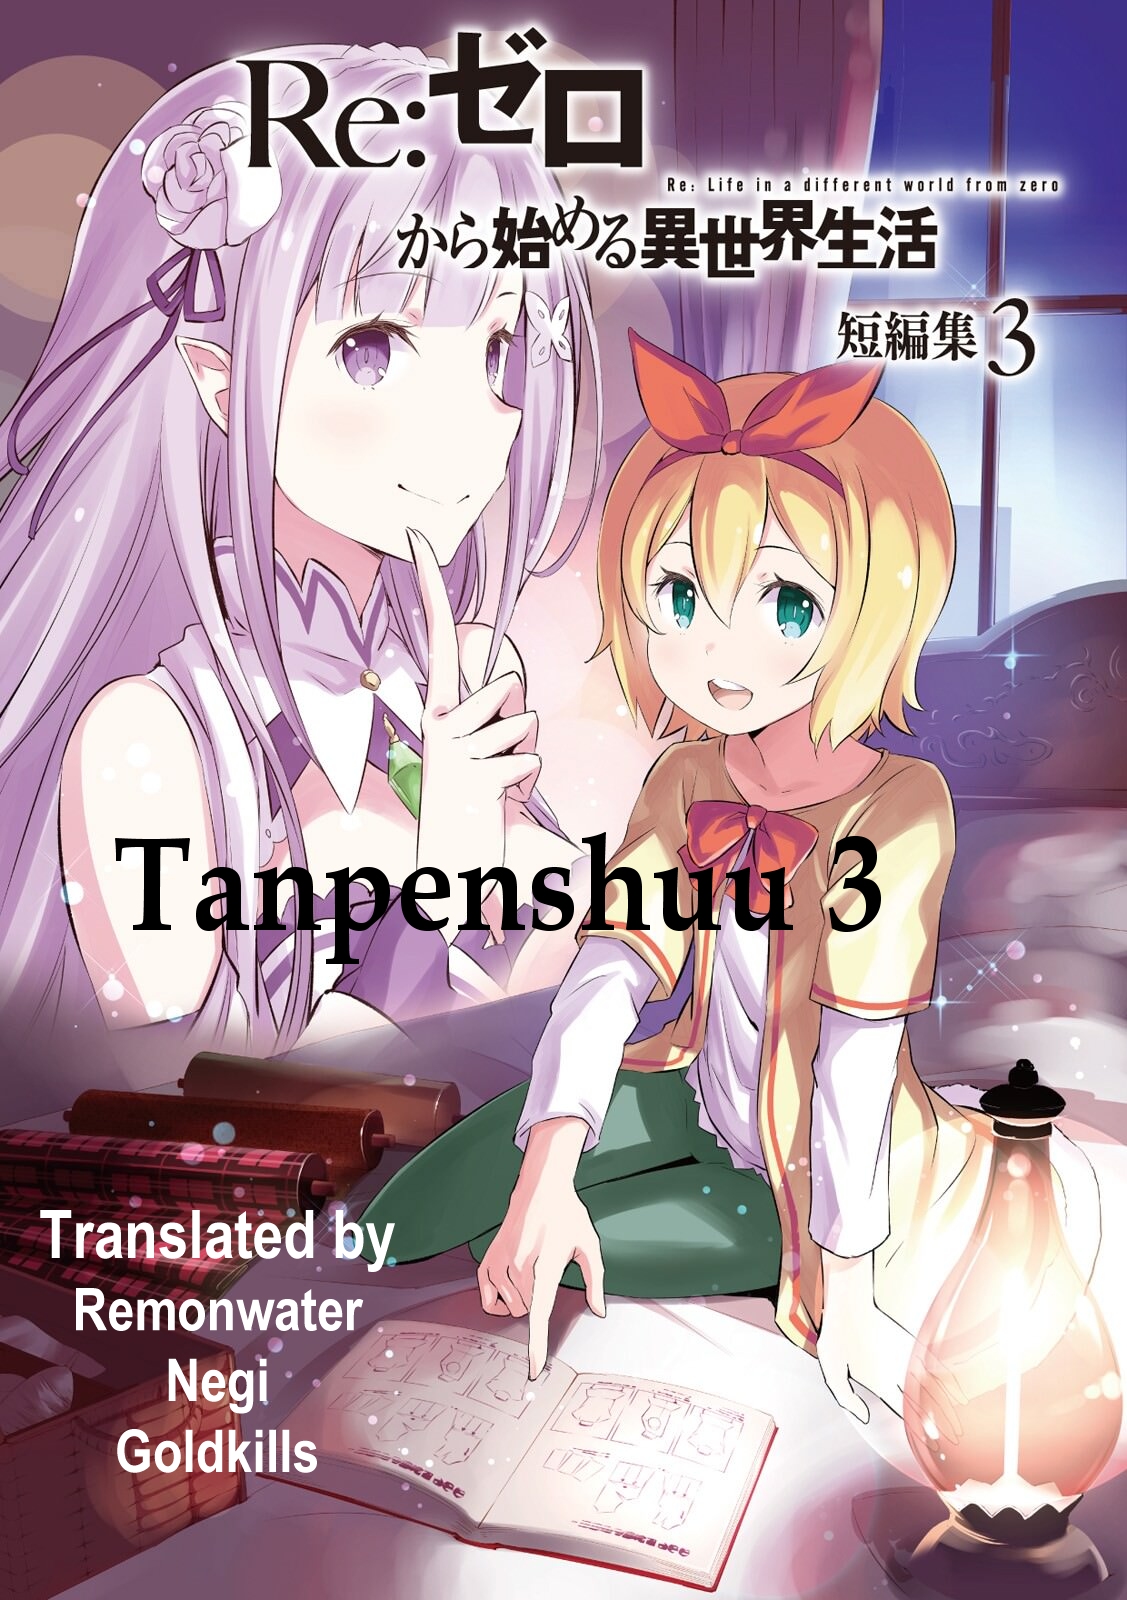 Re:Zero Tanpenshuu Volume 4, Re:Zero Wiki